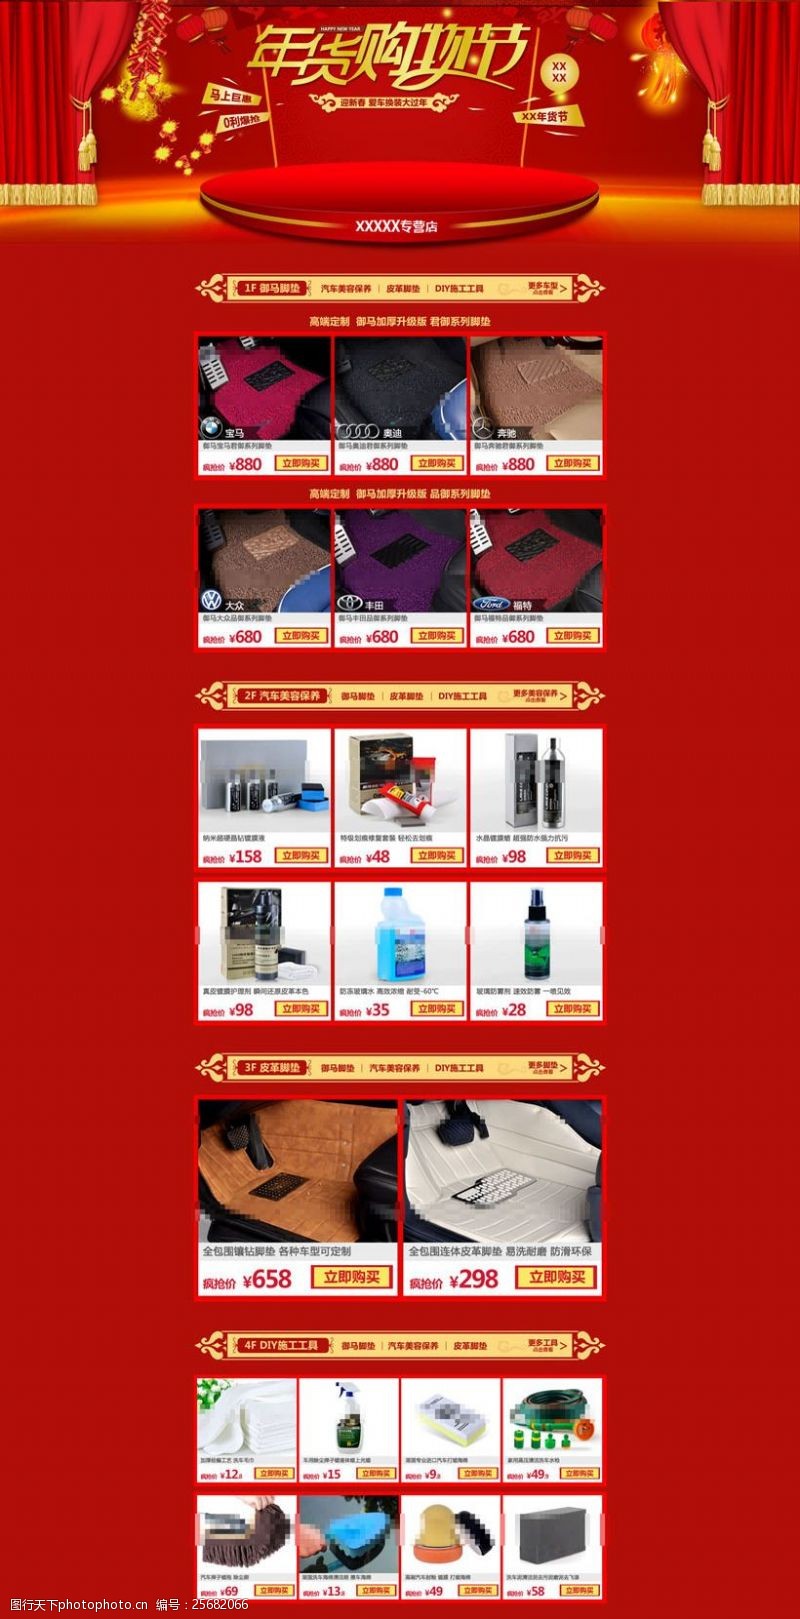 新年红包模板淘宝年货购物节首页设计PSD素材